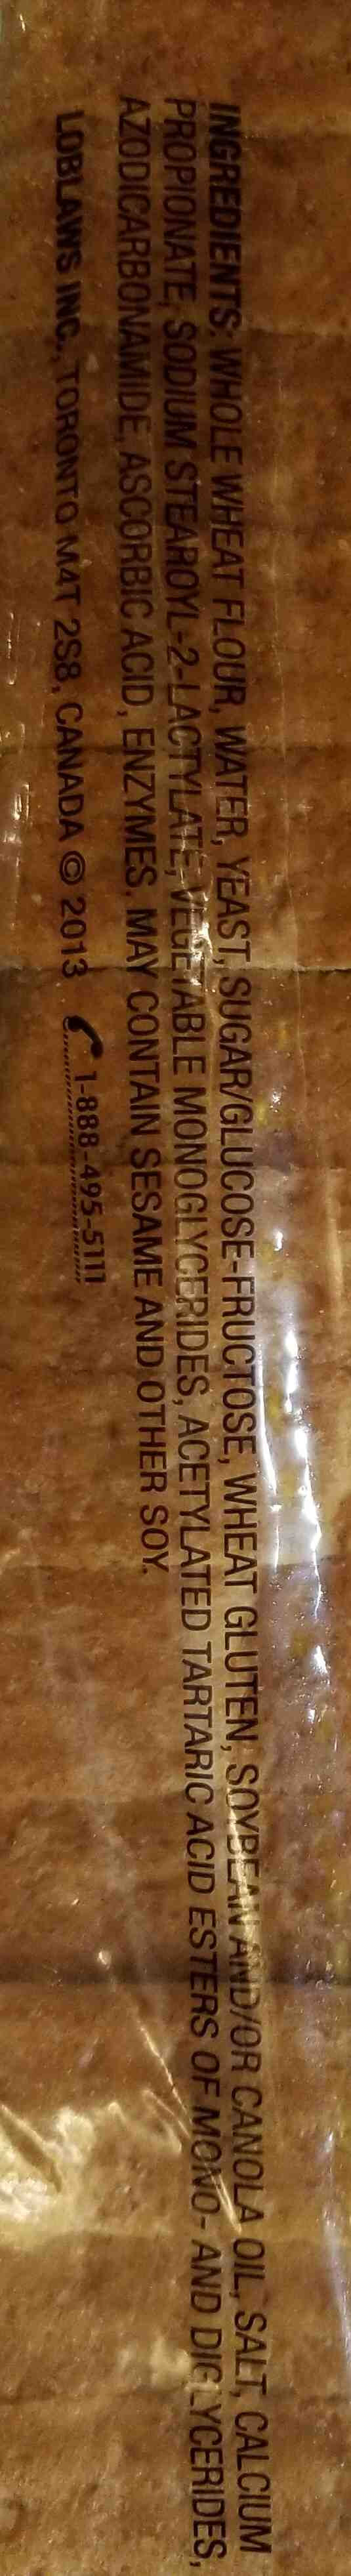 100% whole wheat bread - Ingredients - en